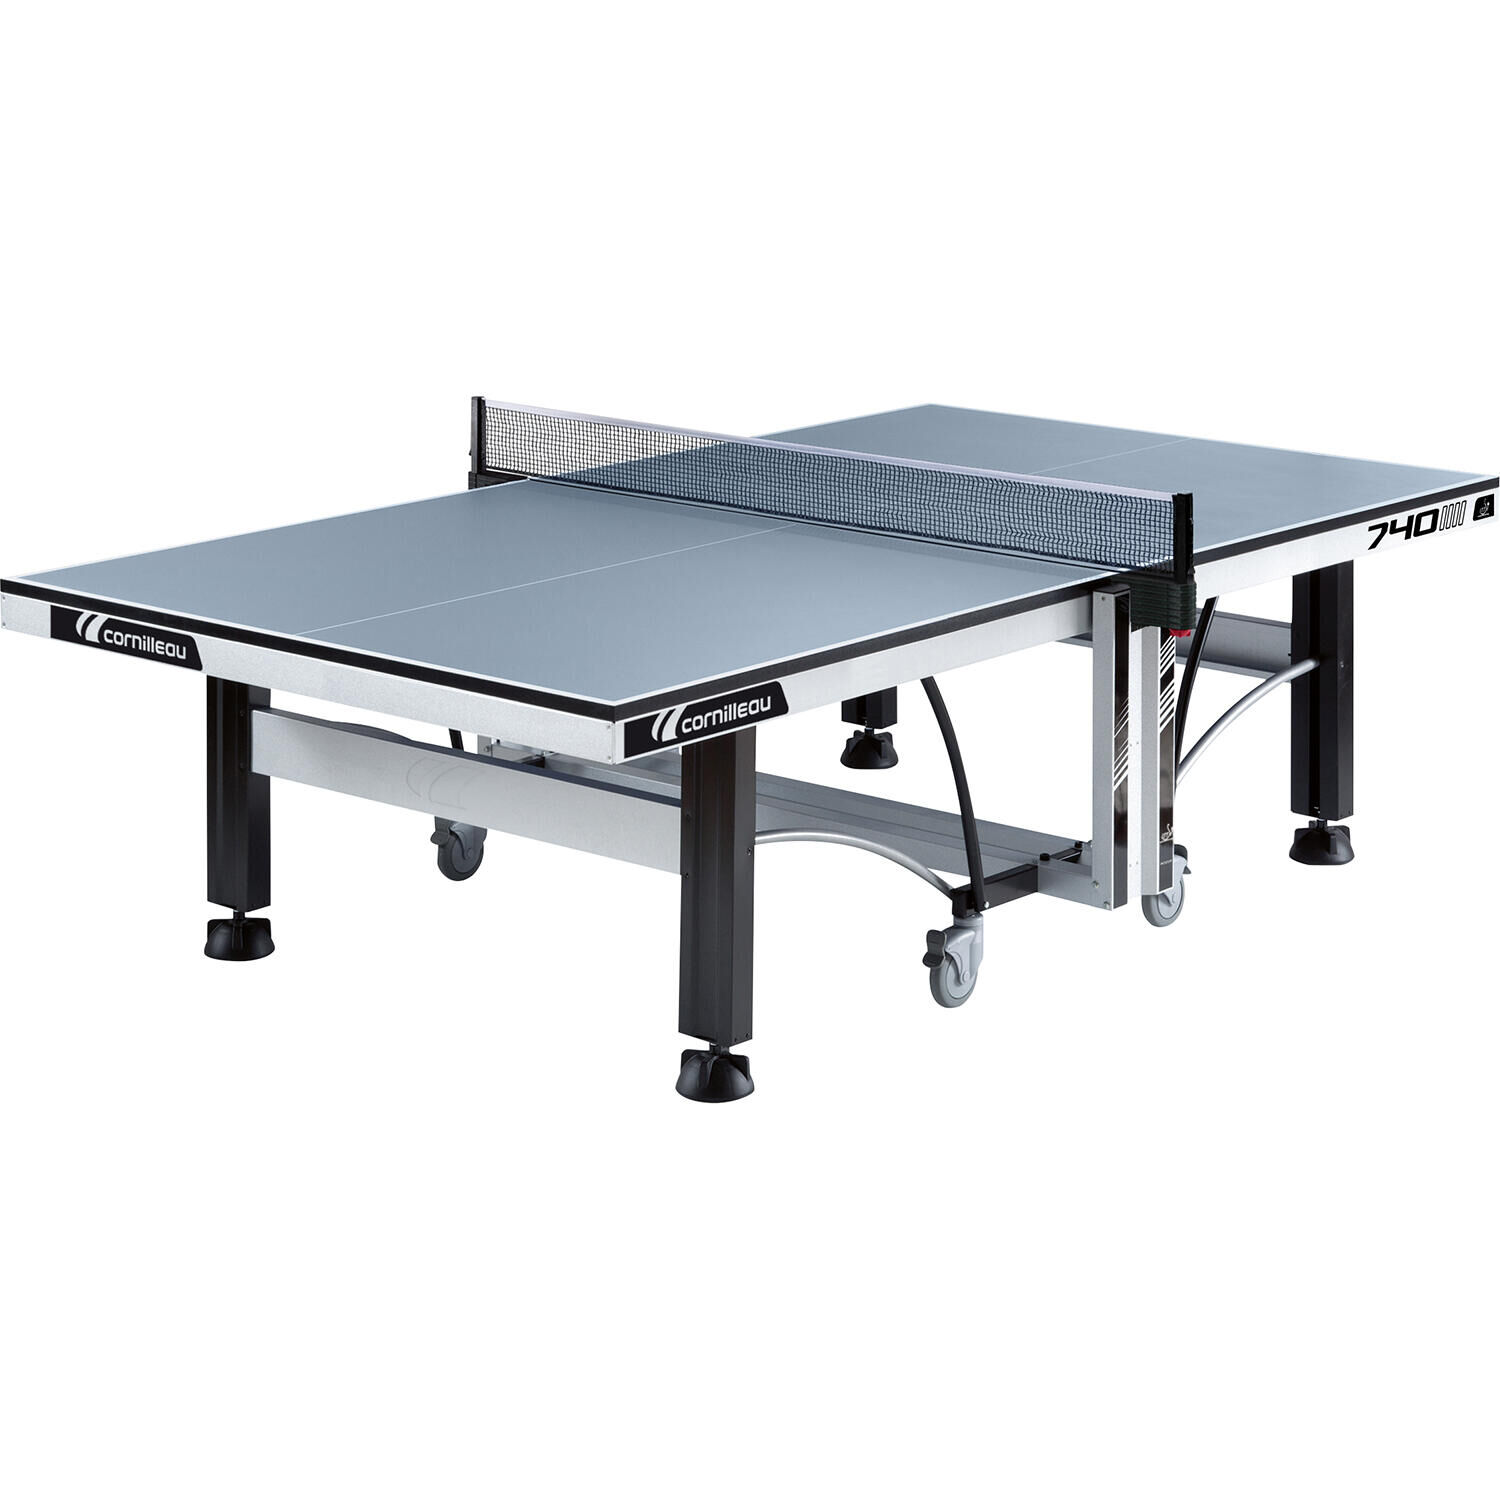 CORNILLEAU 740 ITTF Indoor Table Tennis Table - Grey